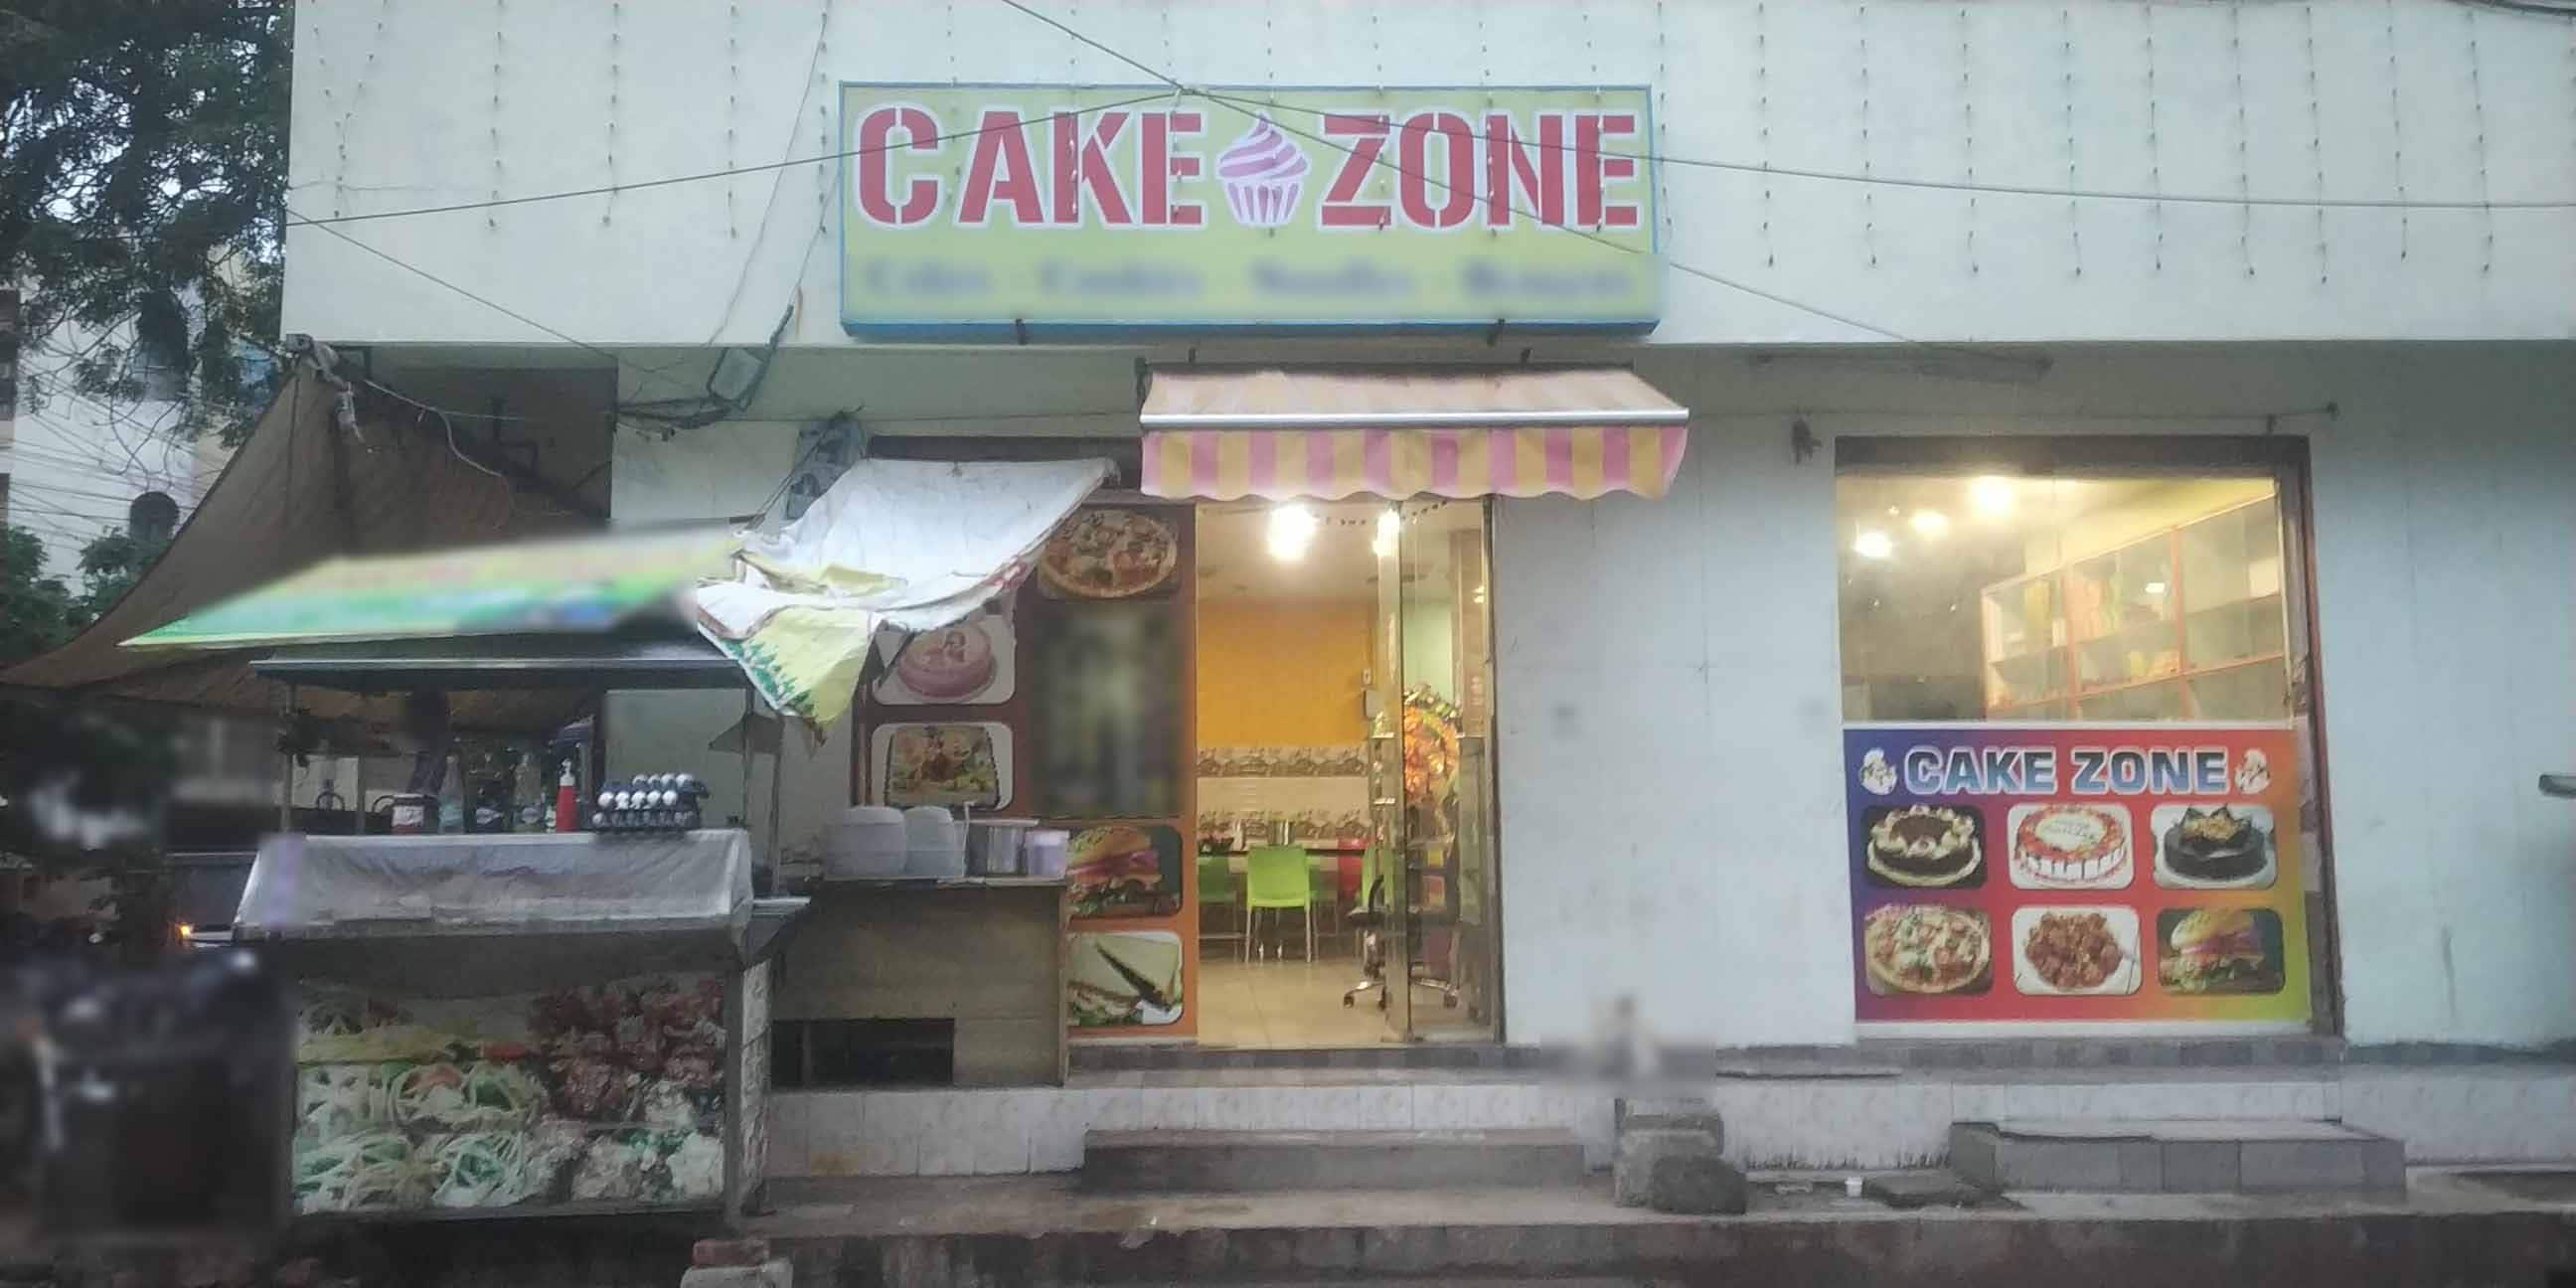 Update 77+ cake zone com best - in.daotaonec